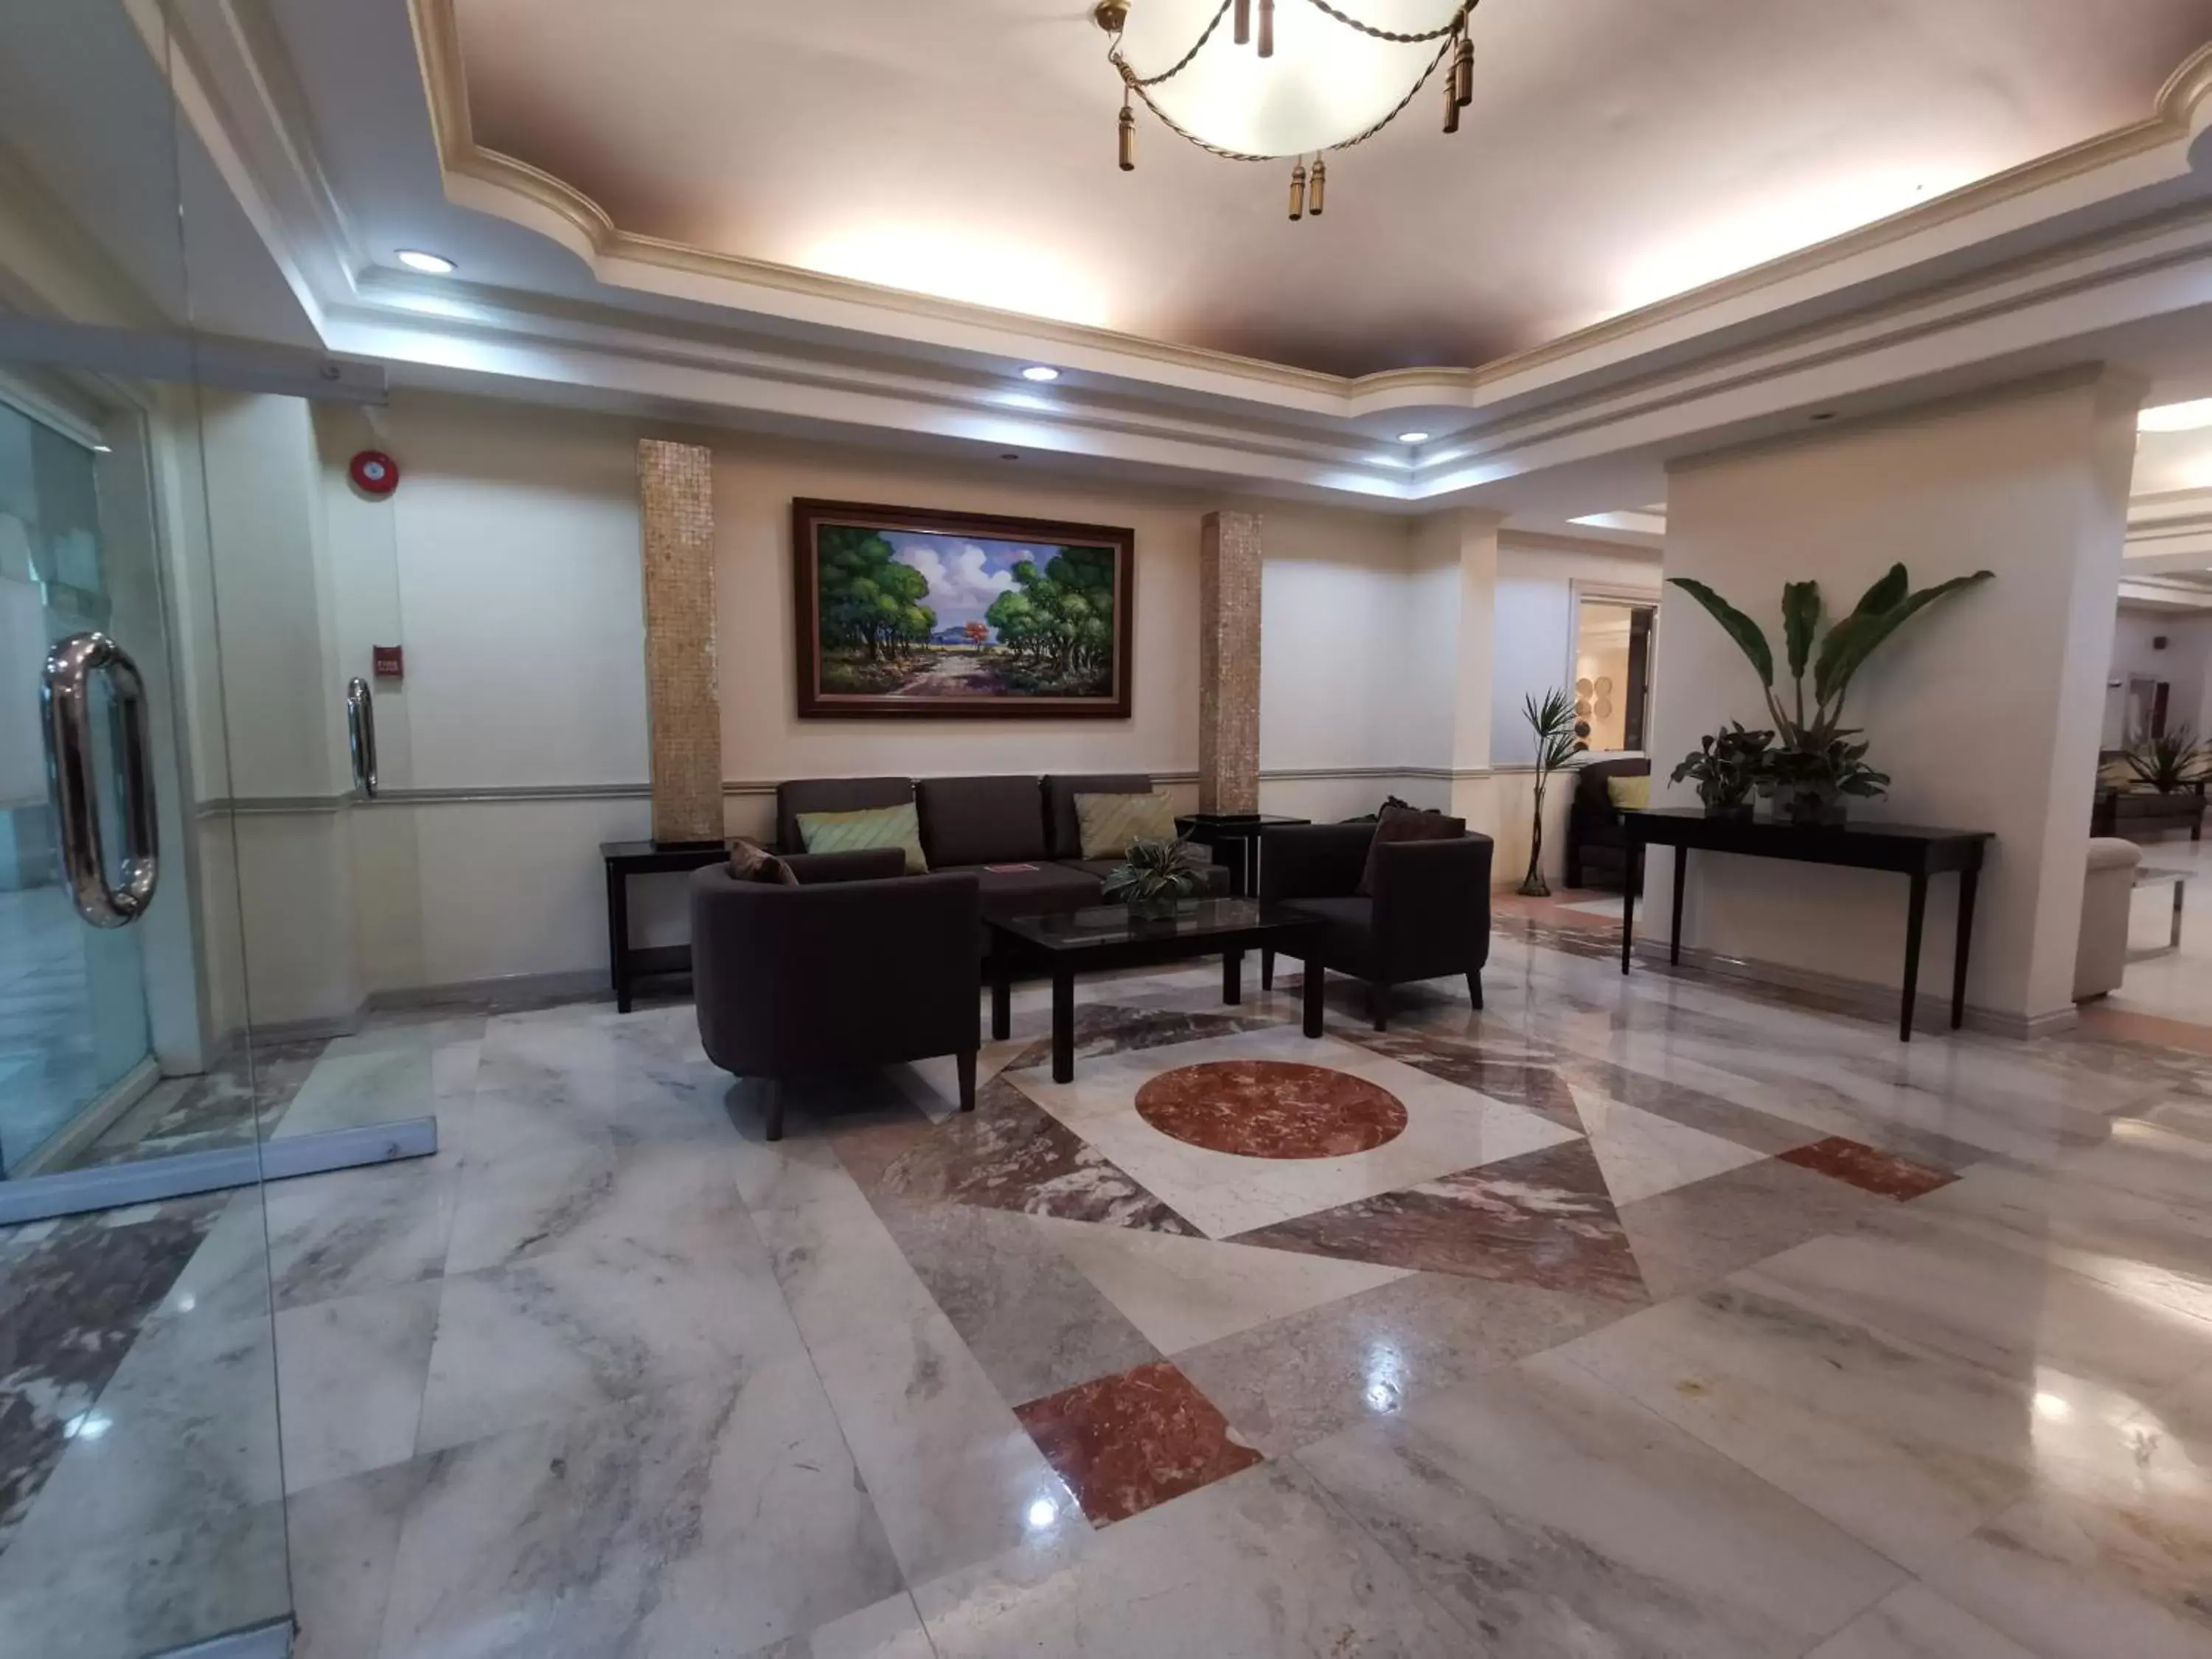 Lobby or reception, Lobby/Reception in Tagaytay Country Hotel